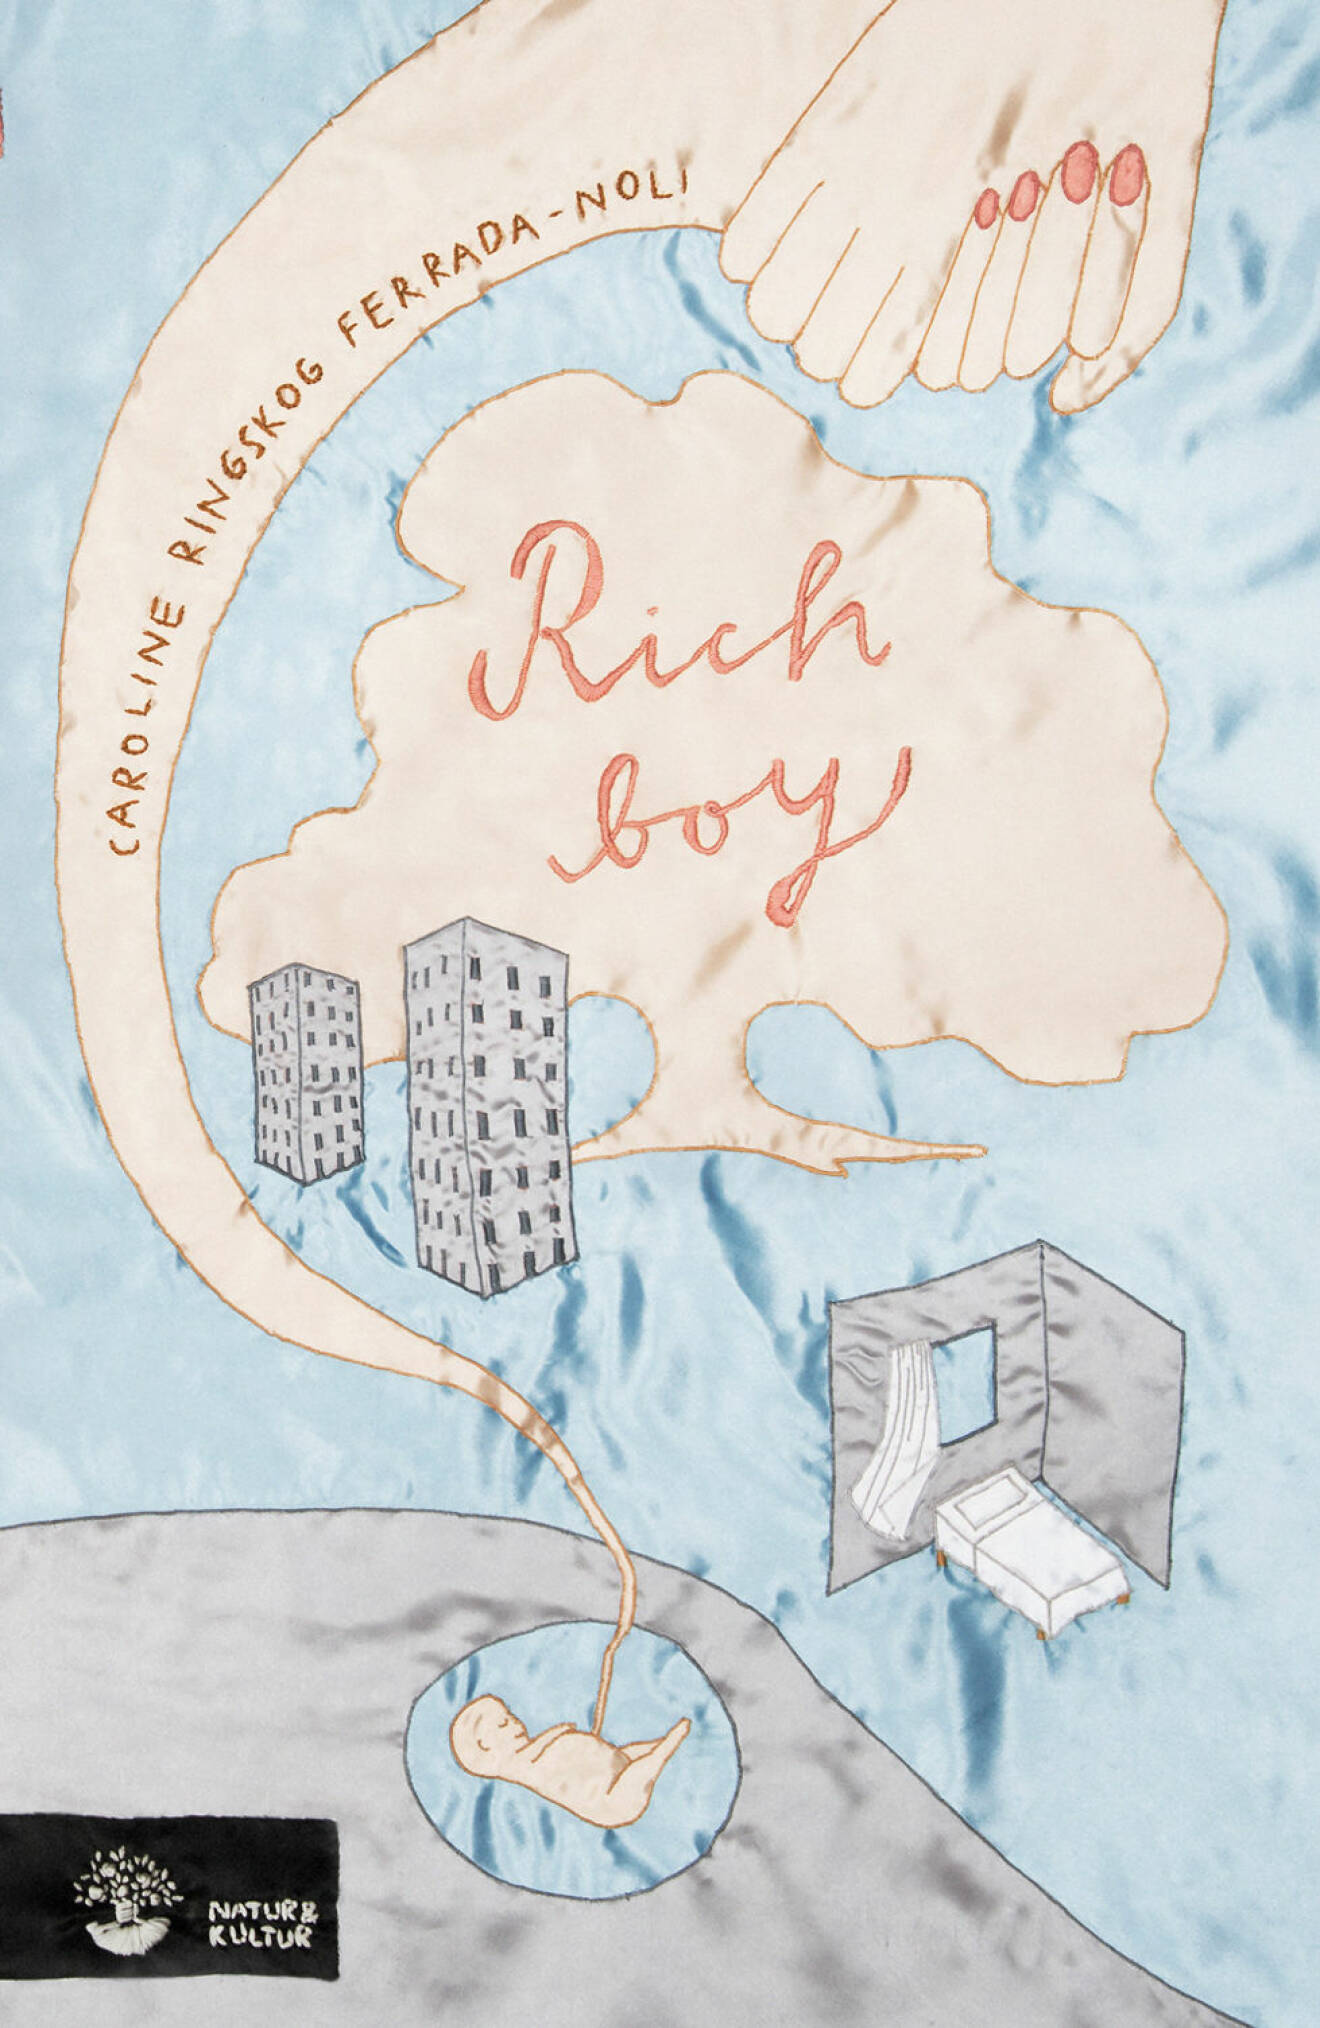 Caroline Ringskog Ferrada-Noli berättar om sin bok Rich boy.